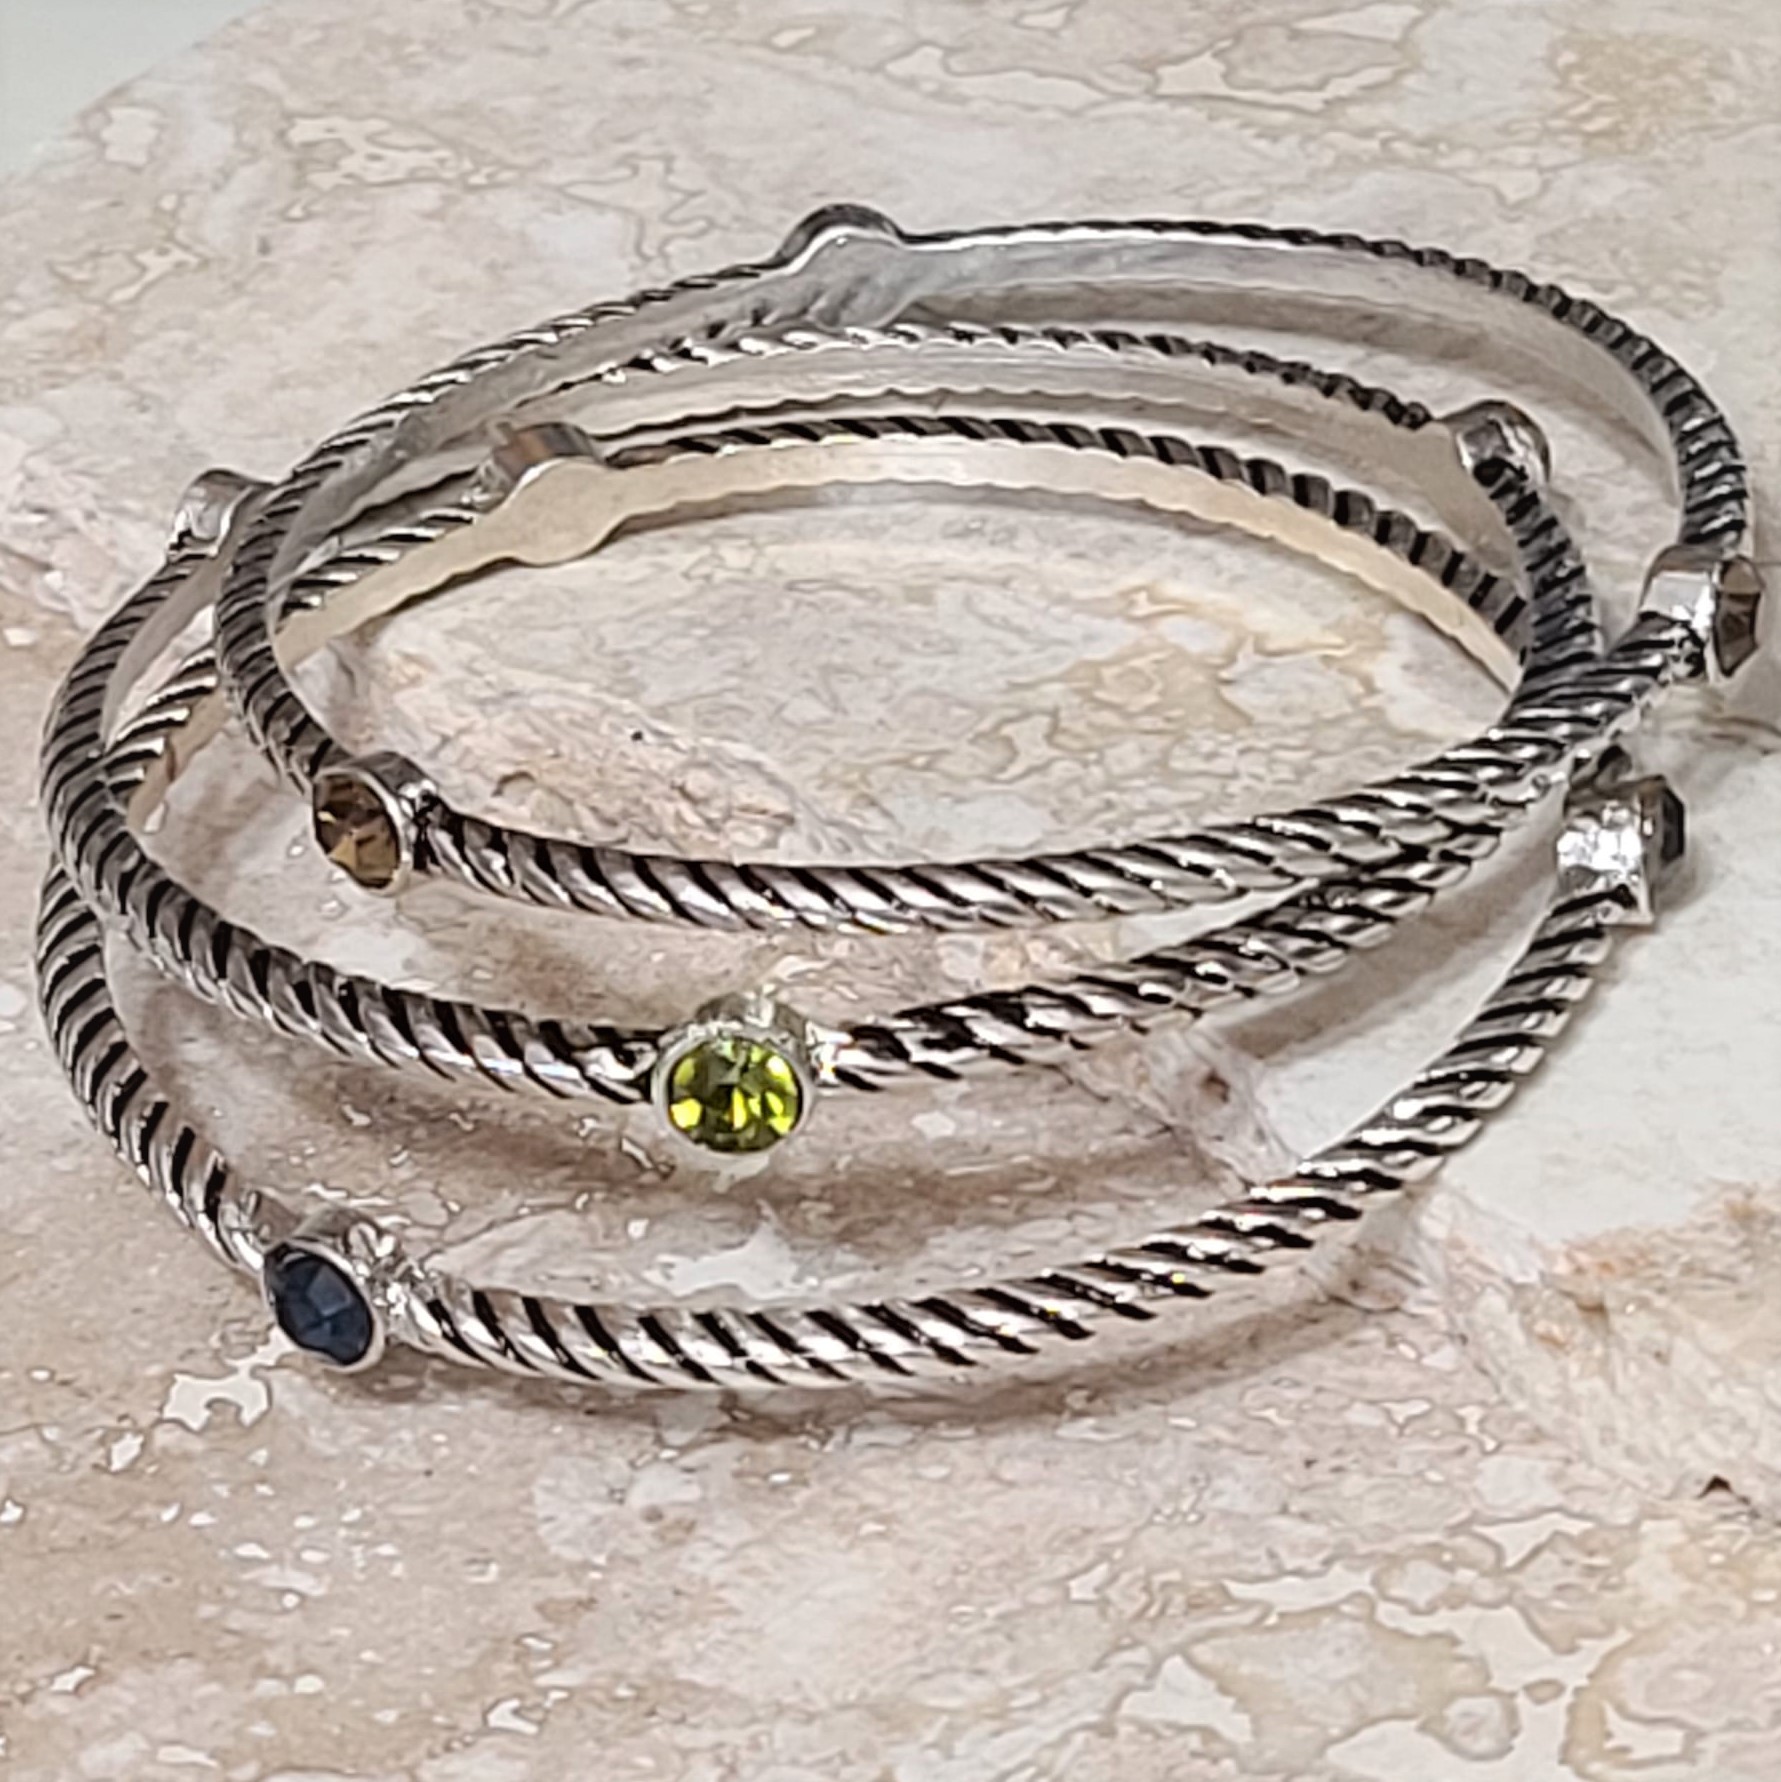 Set of 3 Oxidized Twisted Bangle Bracelets with Rhinestones